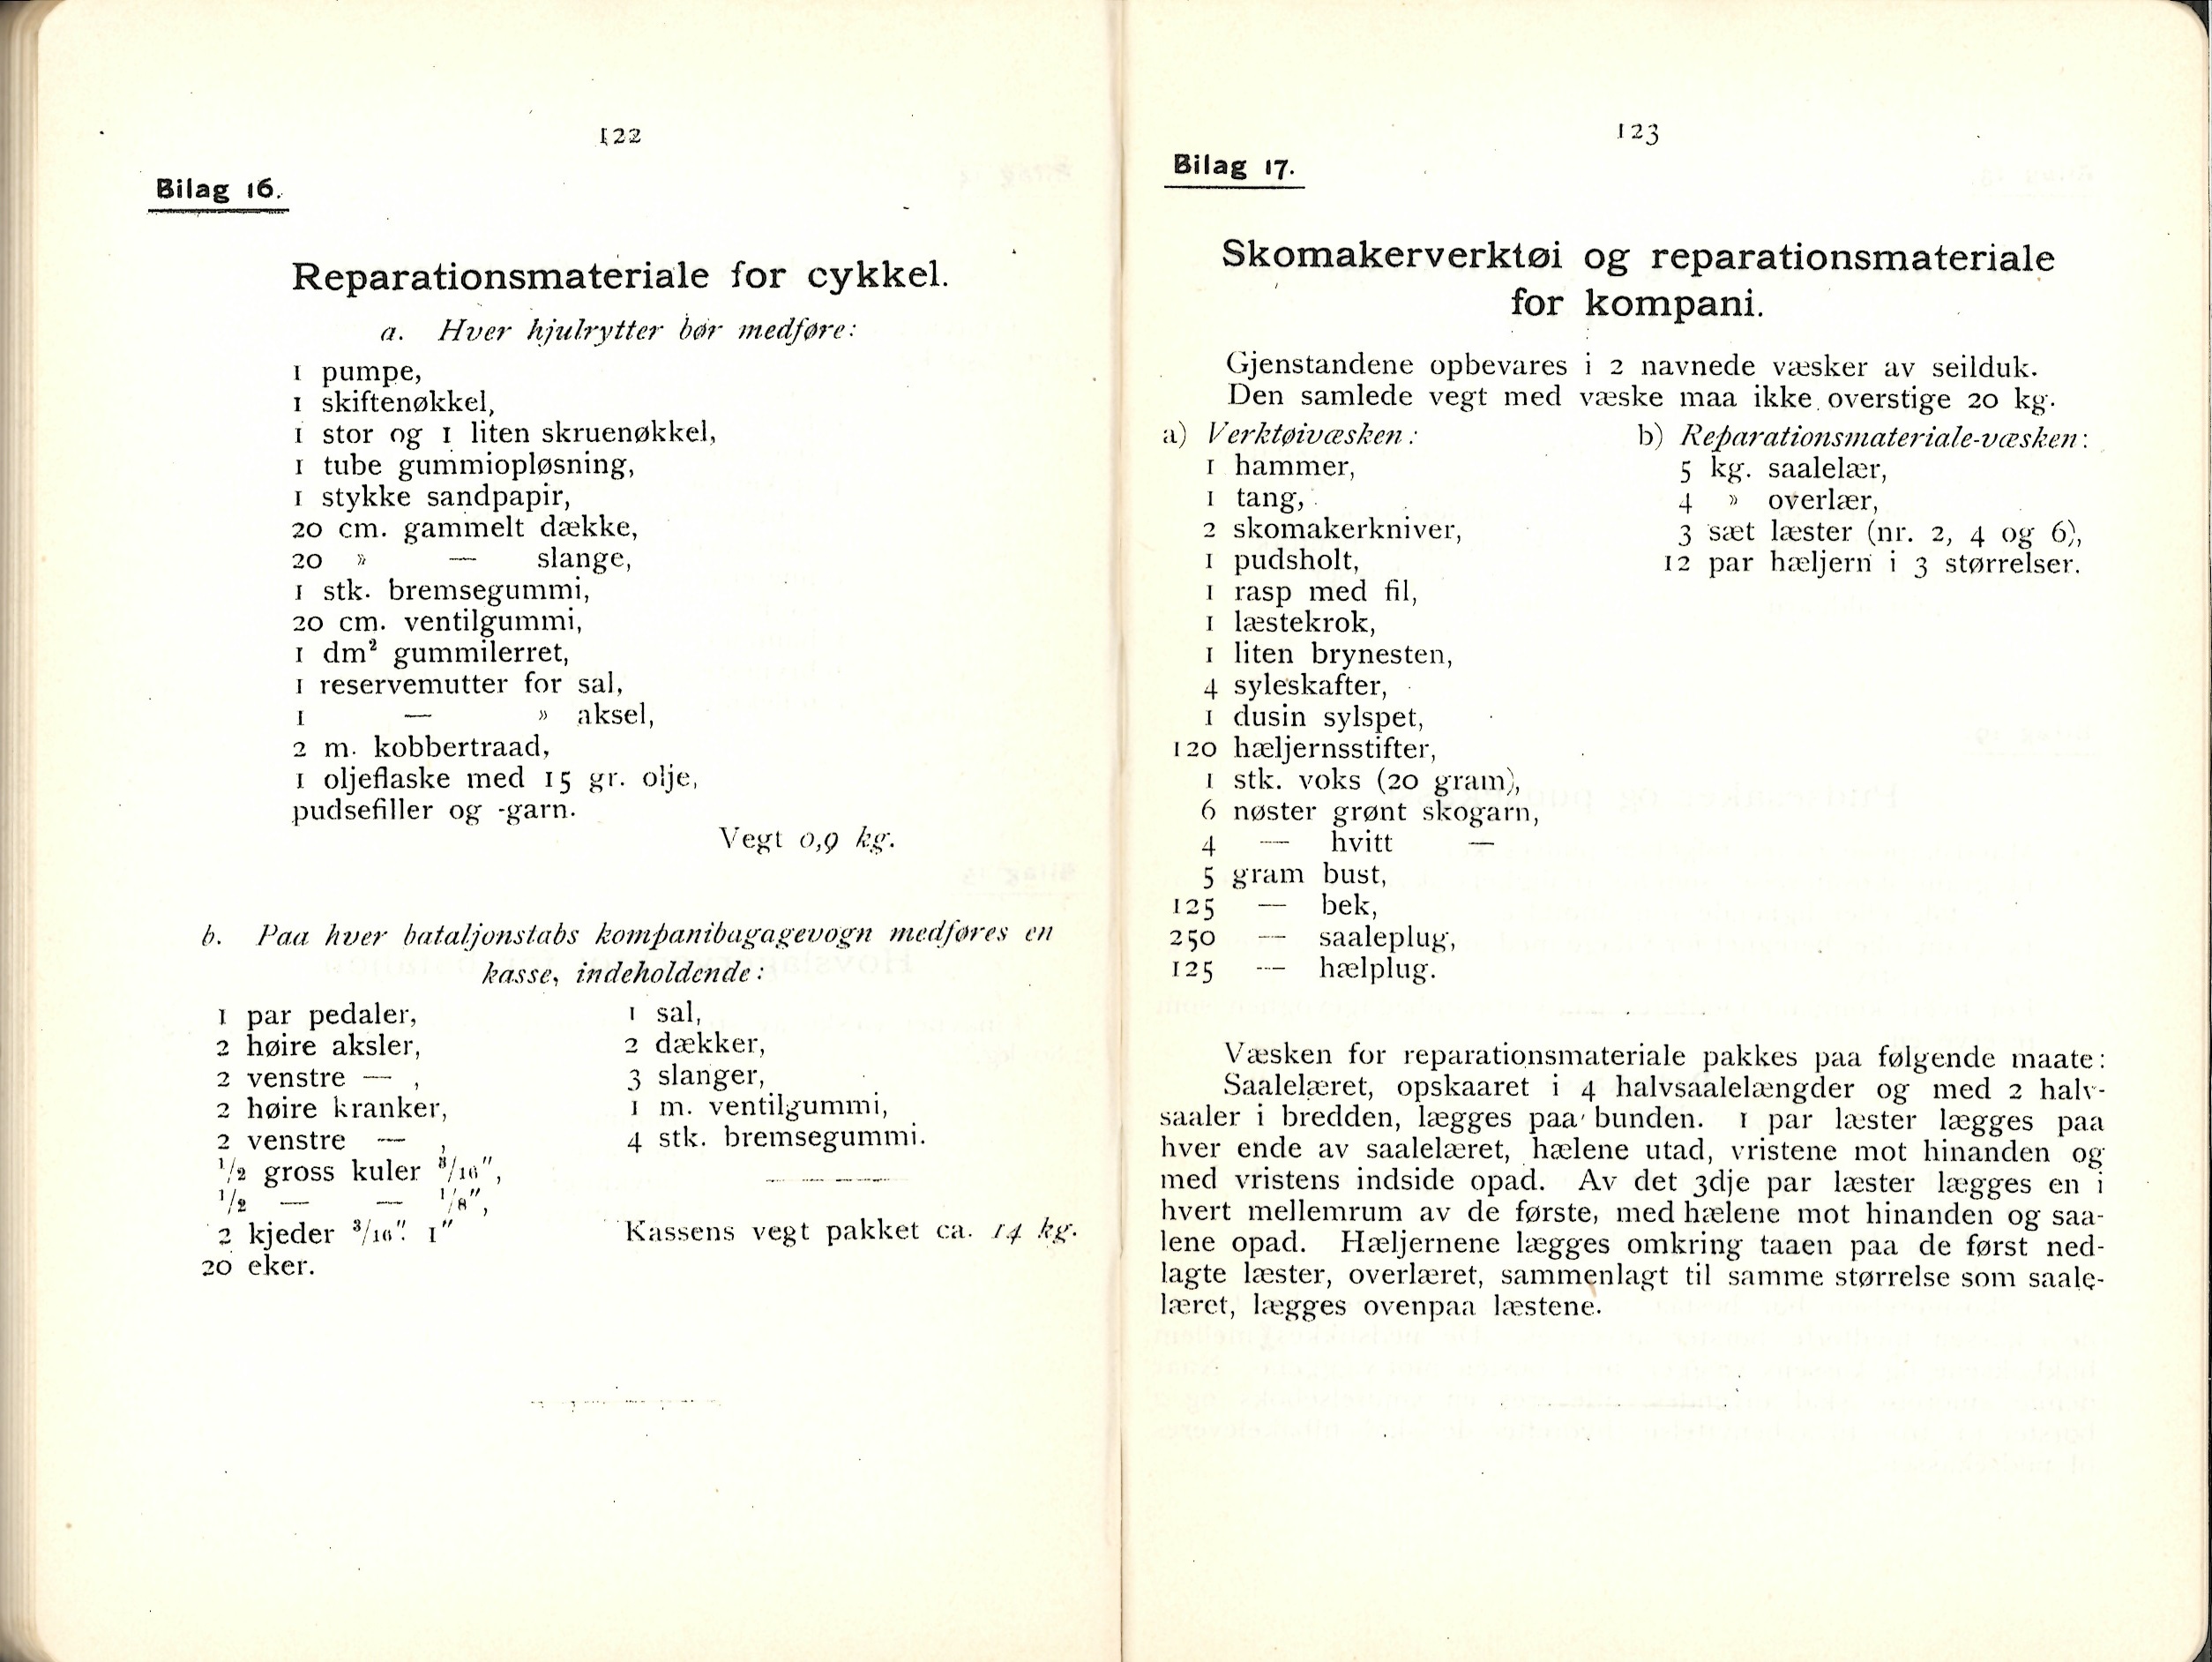 ./doc/reglement/Utrustning/Utrustnings-og-Pakningsplan-1917-18.jpg